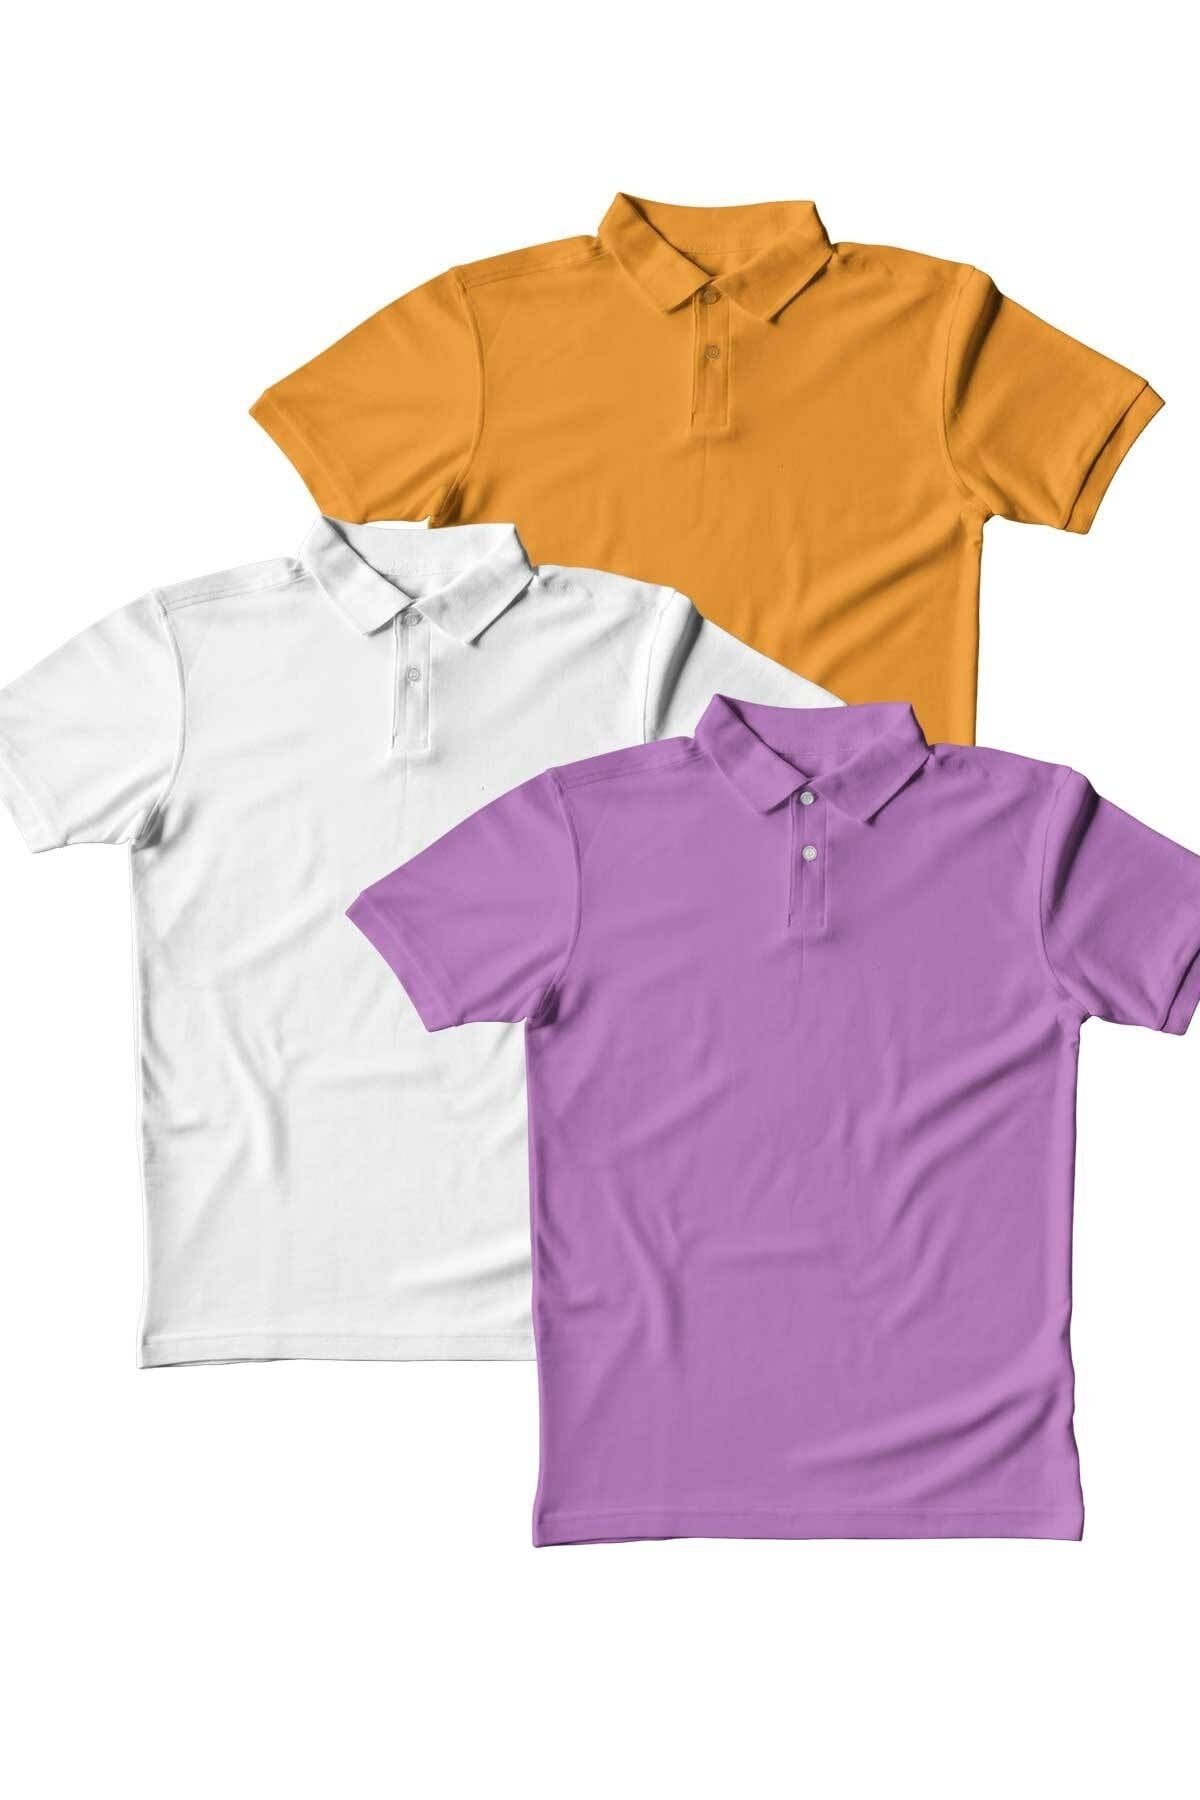 Burlu Polo Yaka T-shirt 3 lü Set